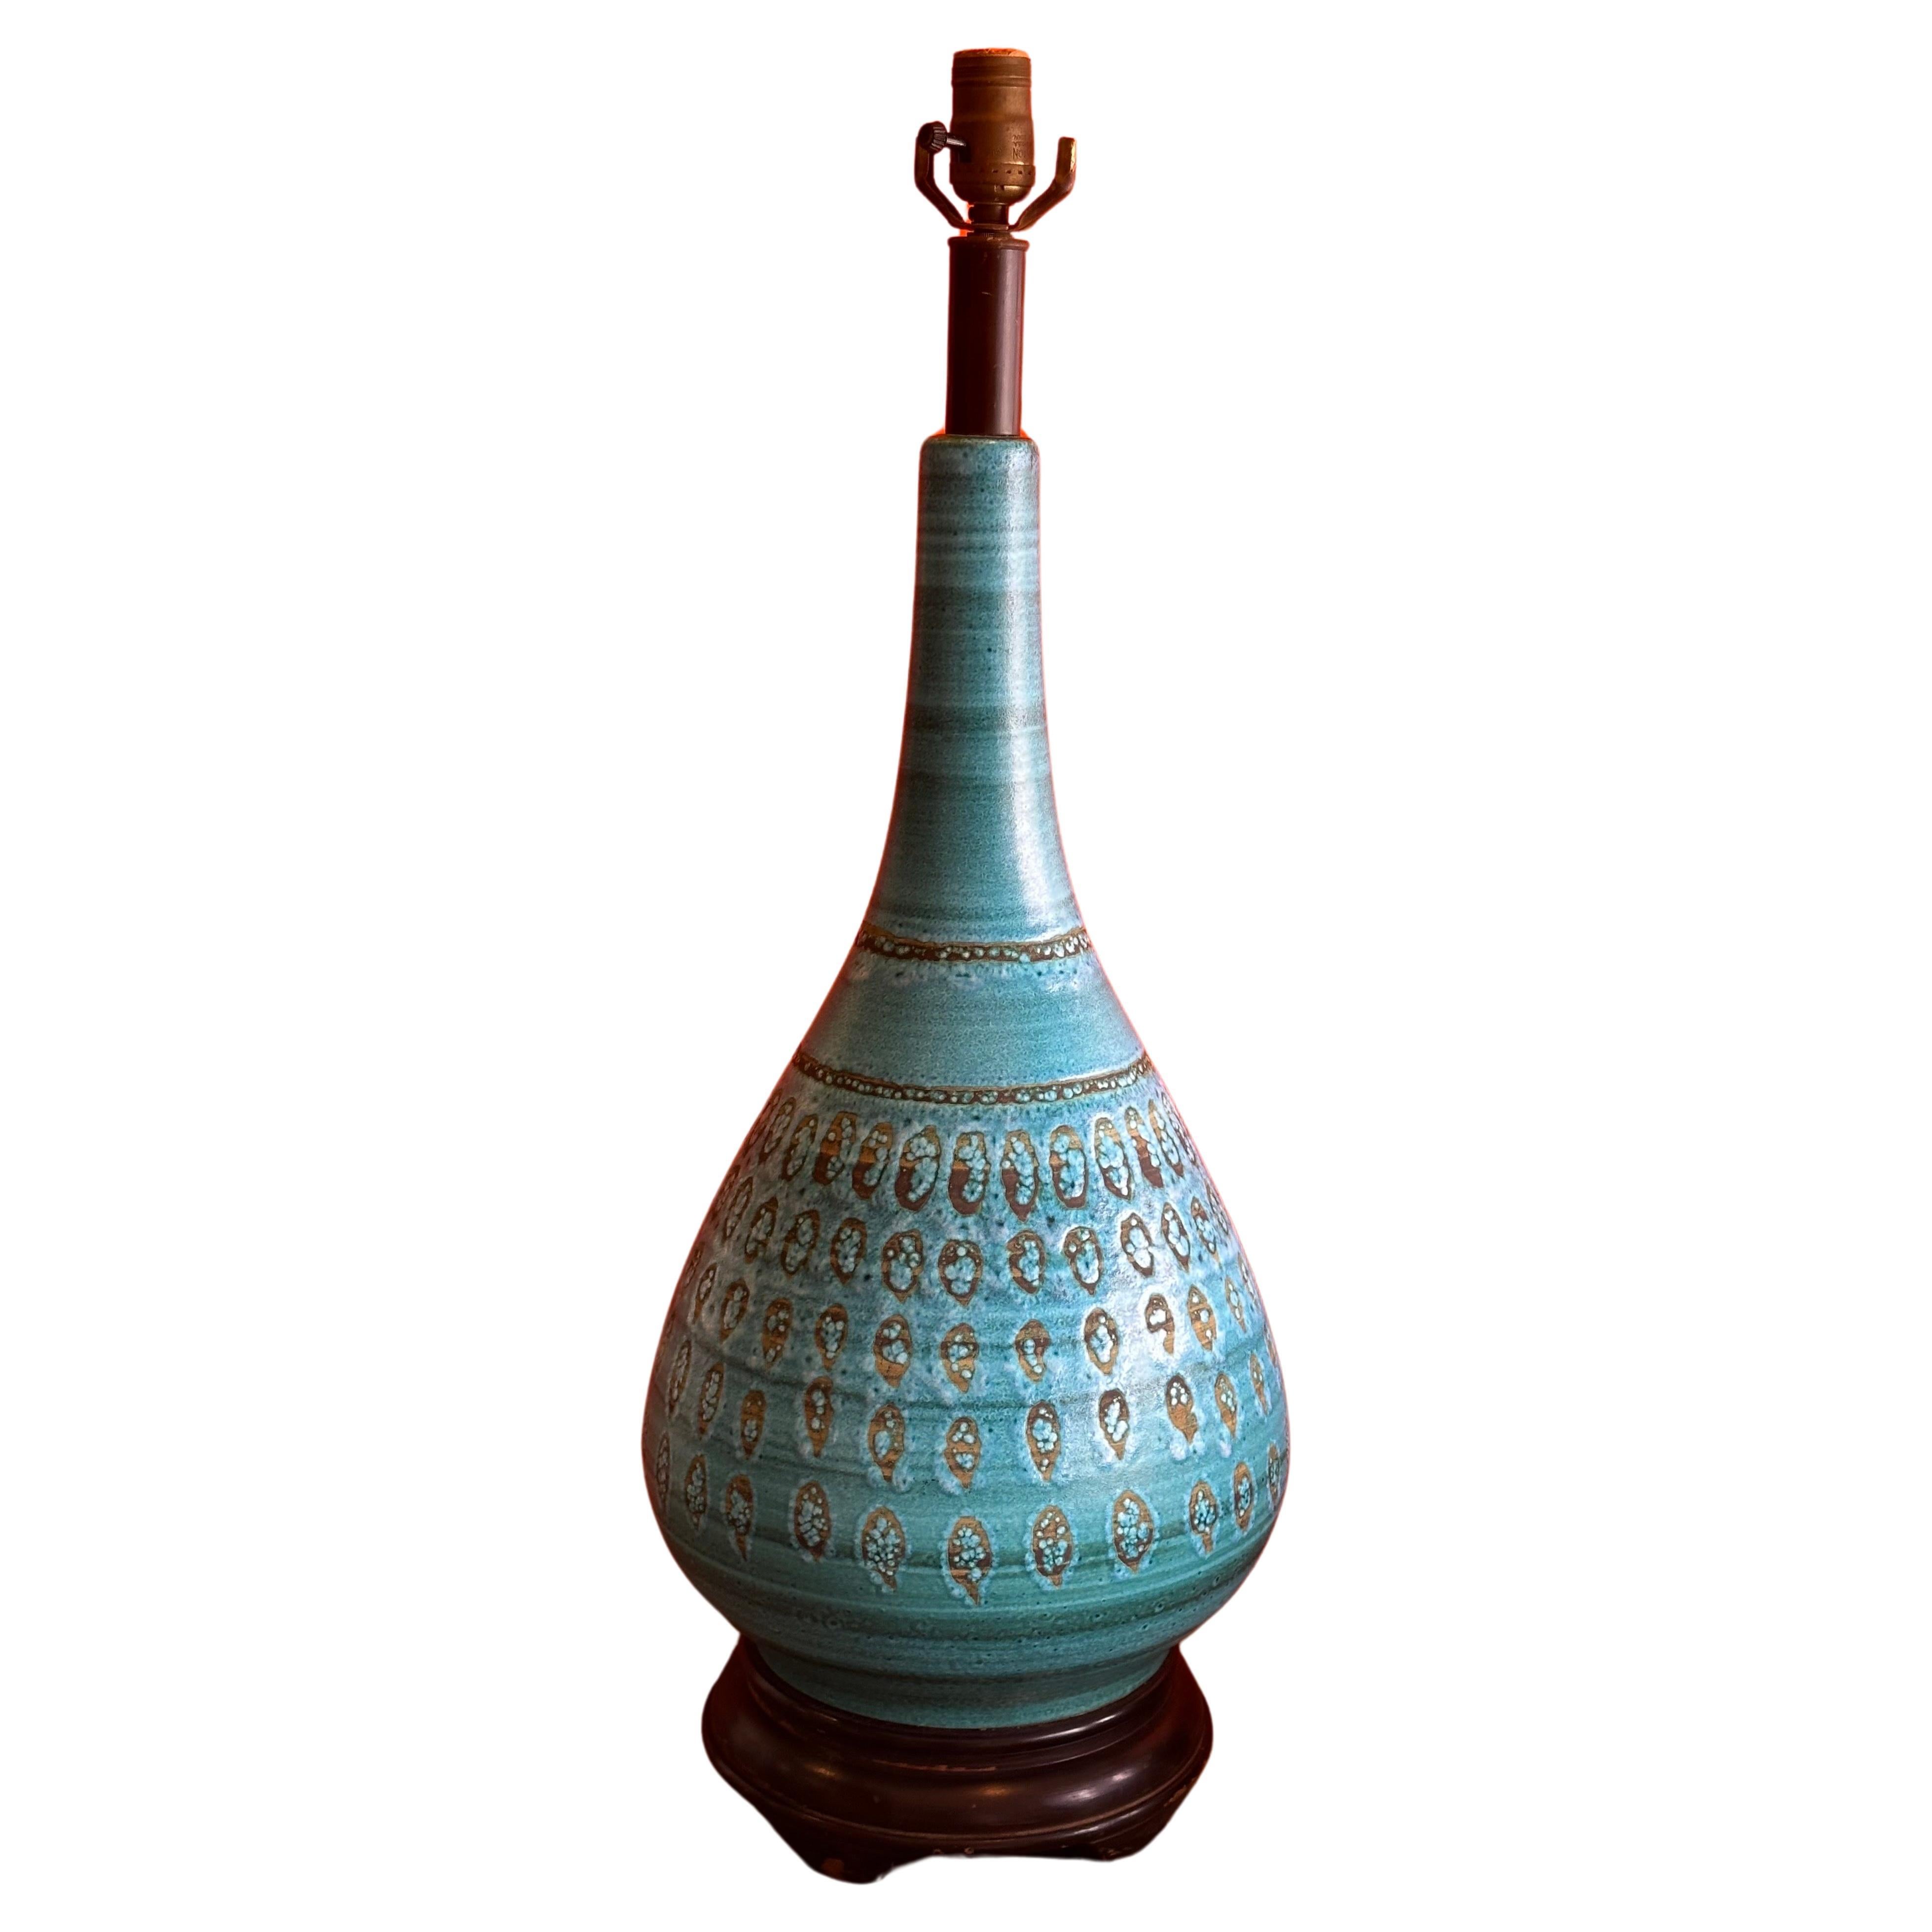 Monumentale lampe en céramique émaillée turquoise d'Aldo Londi pour Bitossi, vers les années 1960.  La lampe est en très bon état de fonctionnement et mesure 11.5 